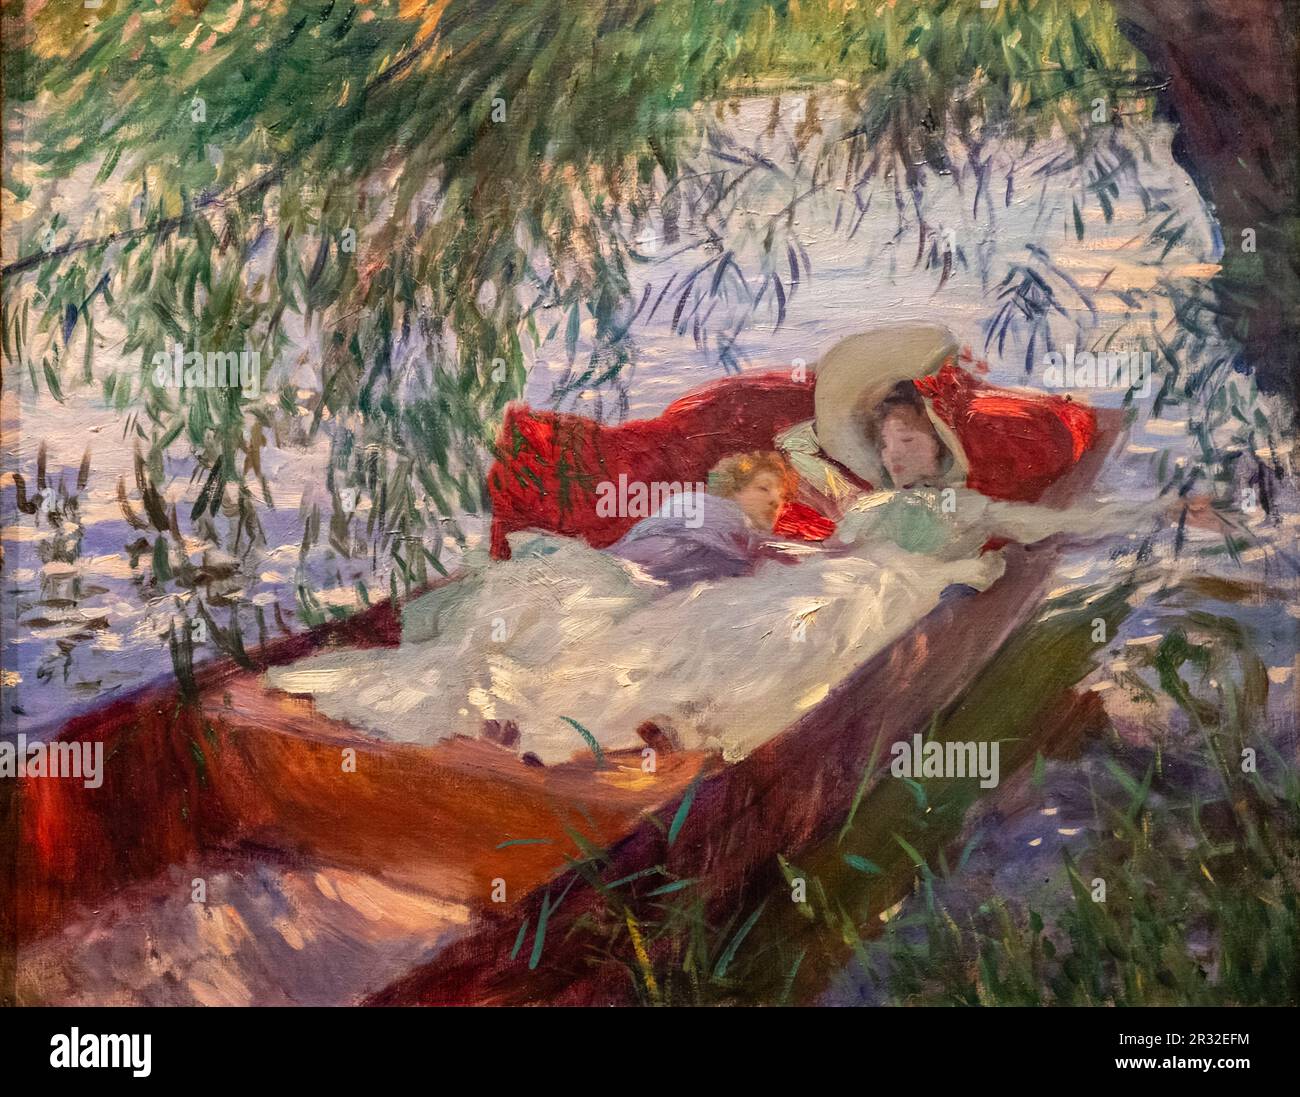 mujer y niño durmiendo en una barca, Sargent, inglaterra 1887, oleo sobre tela, Fundación Calouste Gulbenkian, («Fundação Calouste Gulbenkian»), Lisboa, Portugal. Stock Photo